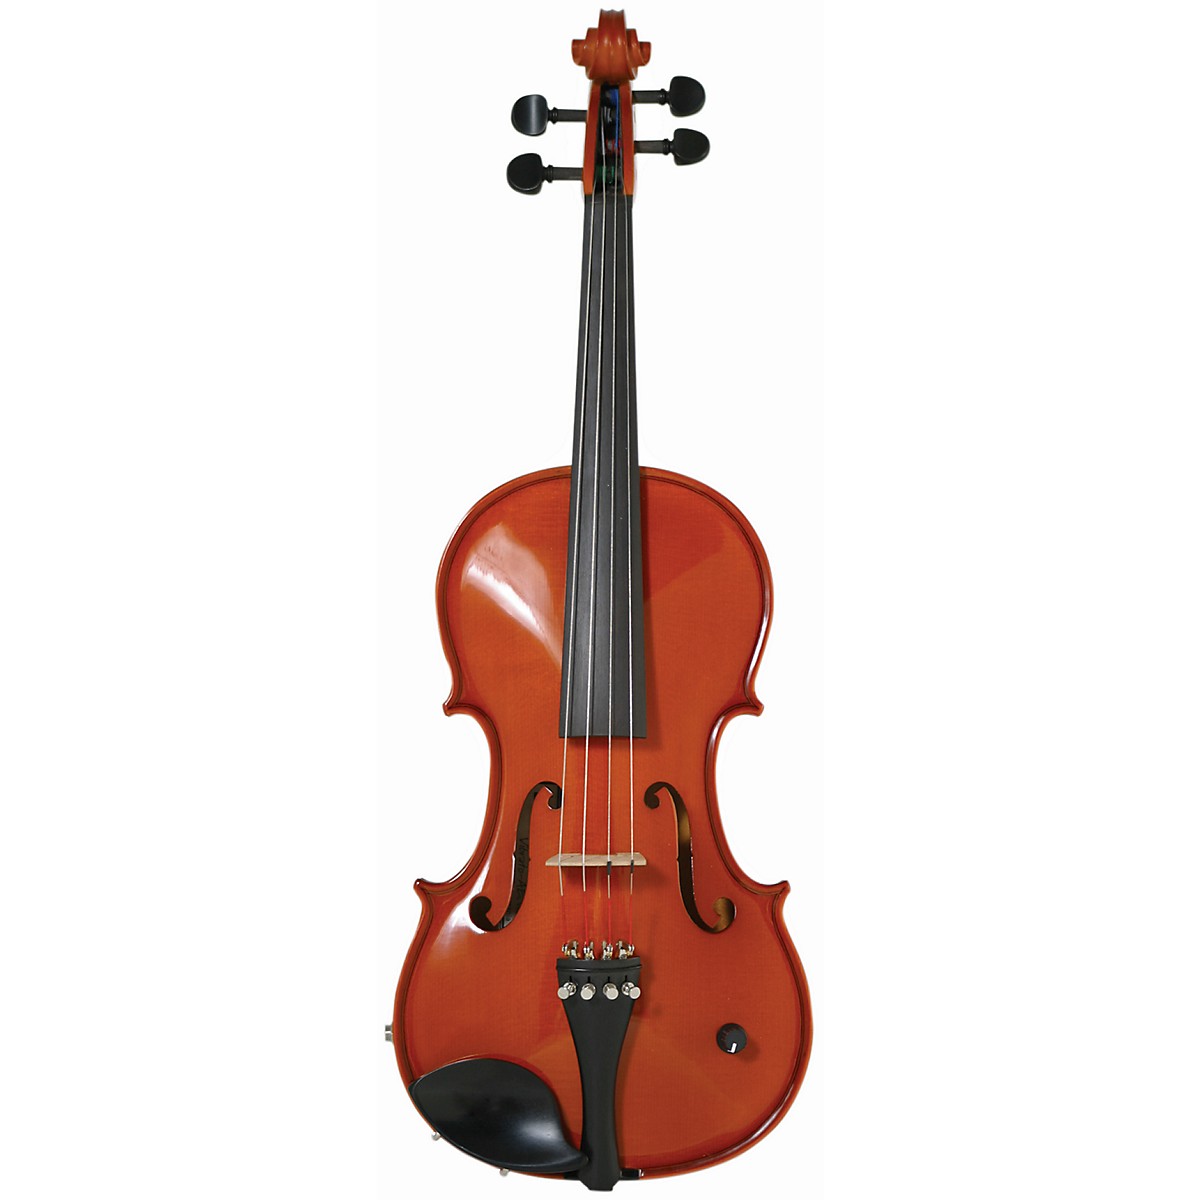 Струнал скрипка 4/4. Strunal 3/60 39 (альты). Gliga gama p-v034 размер 3/4. Купить скрипку 4/4. Концертные скрипки